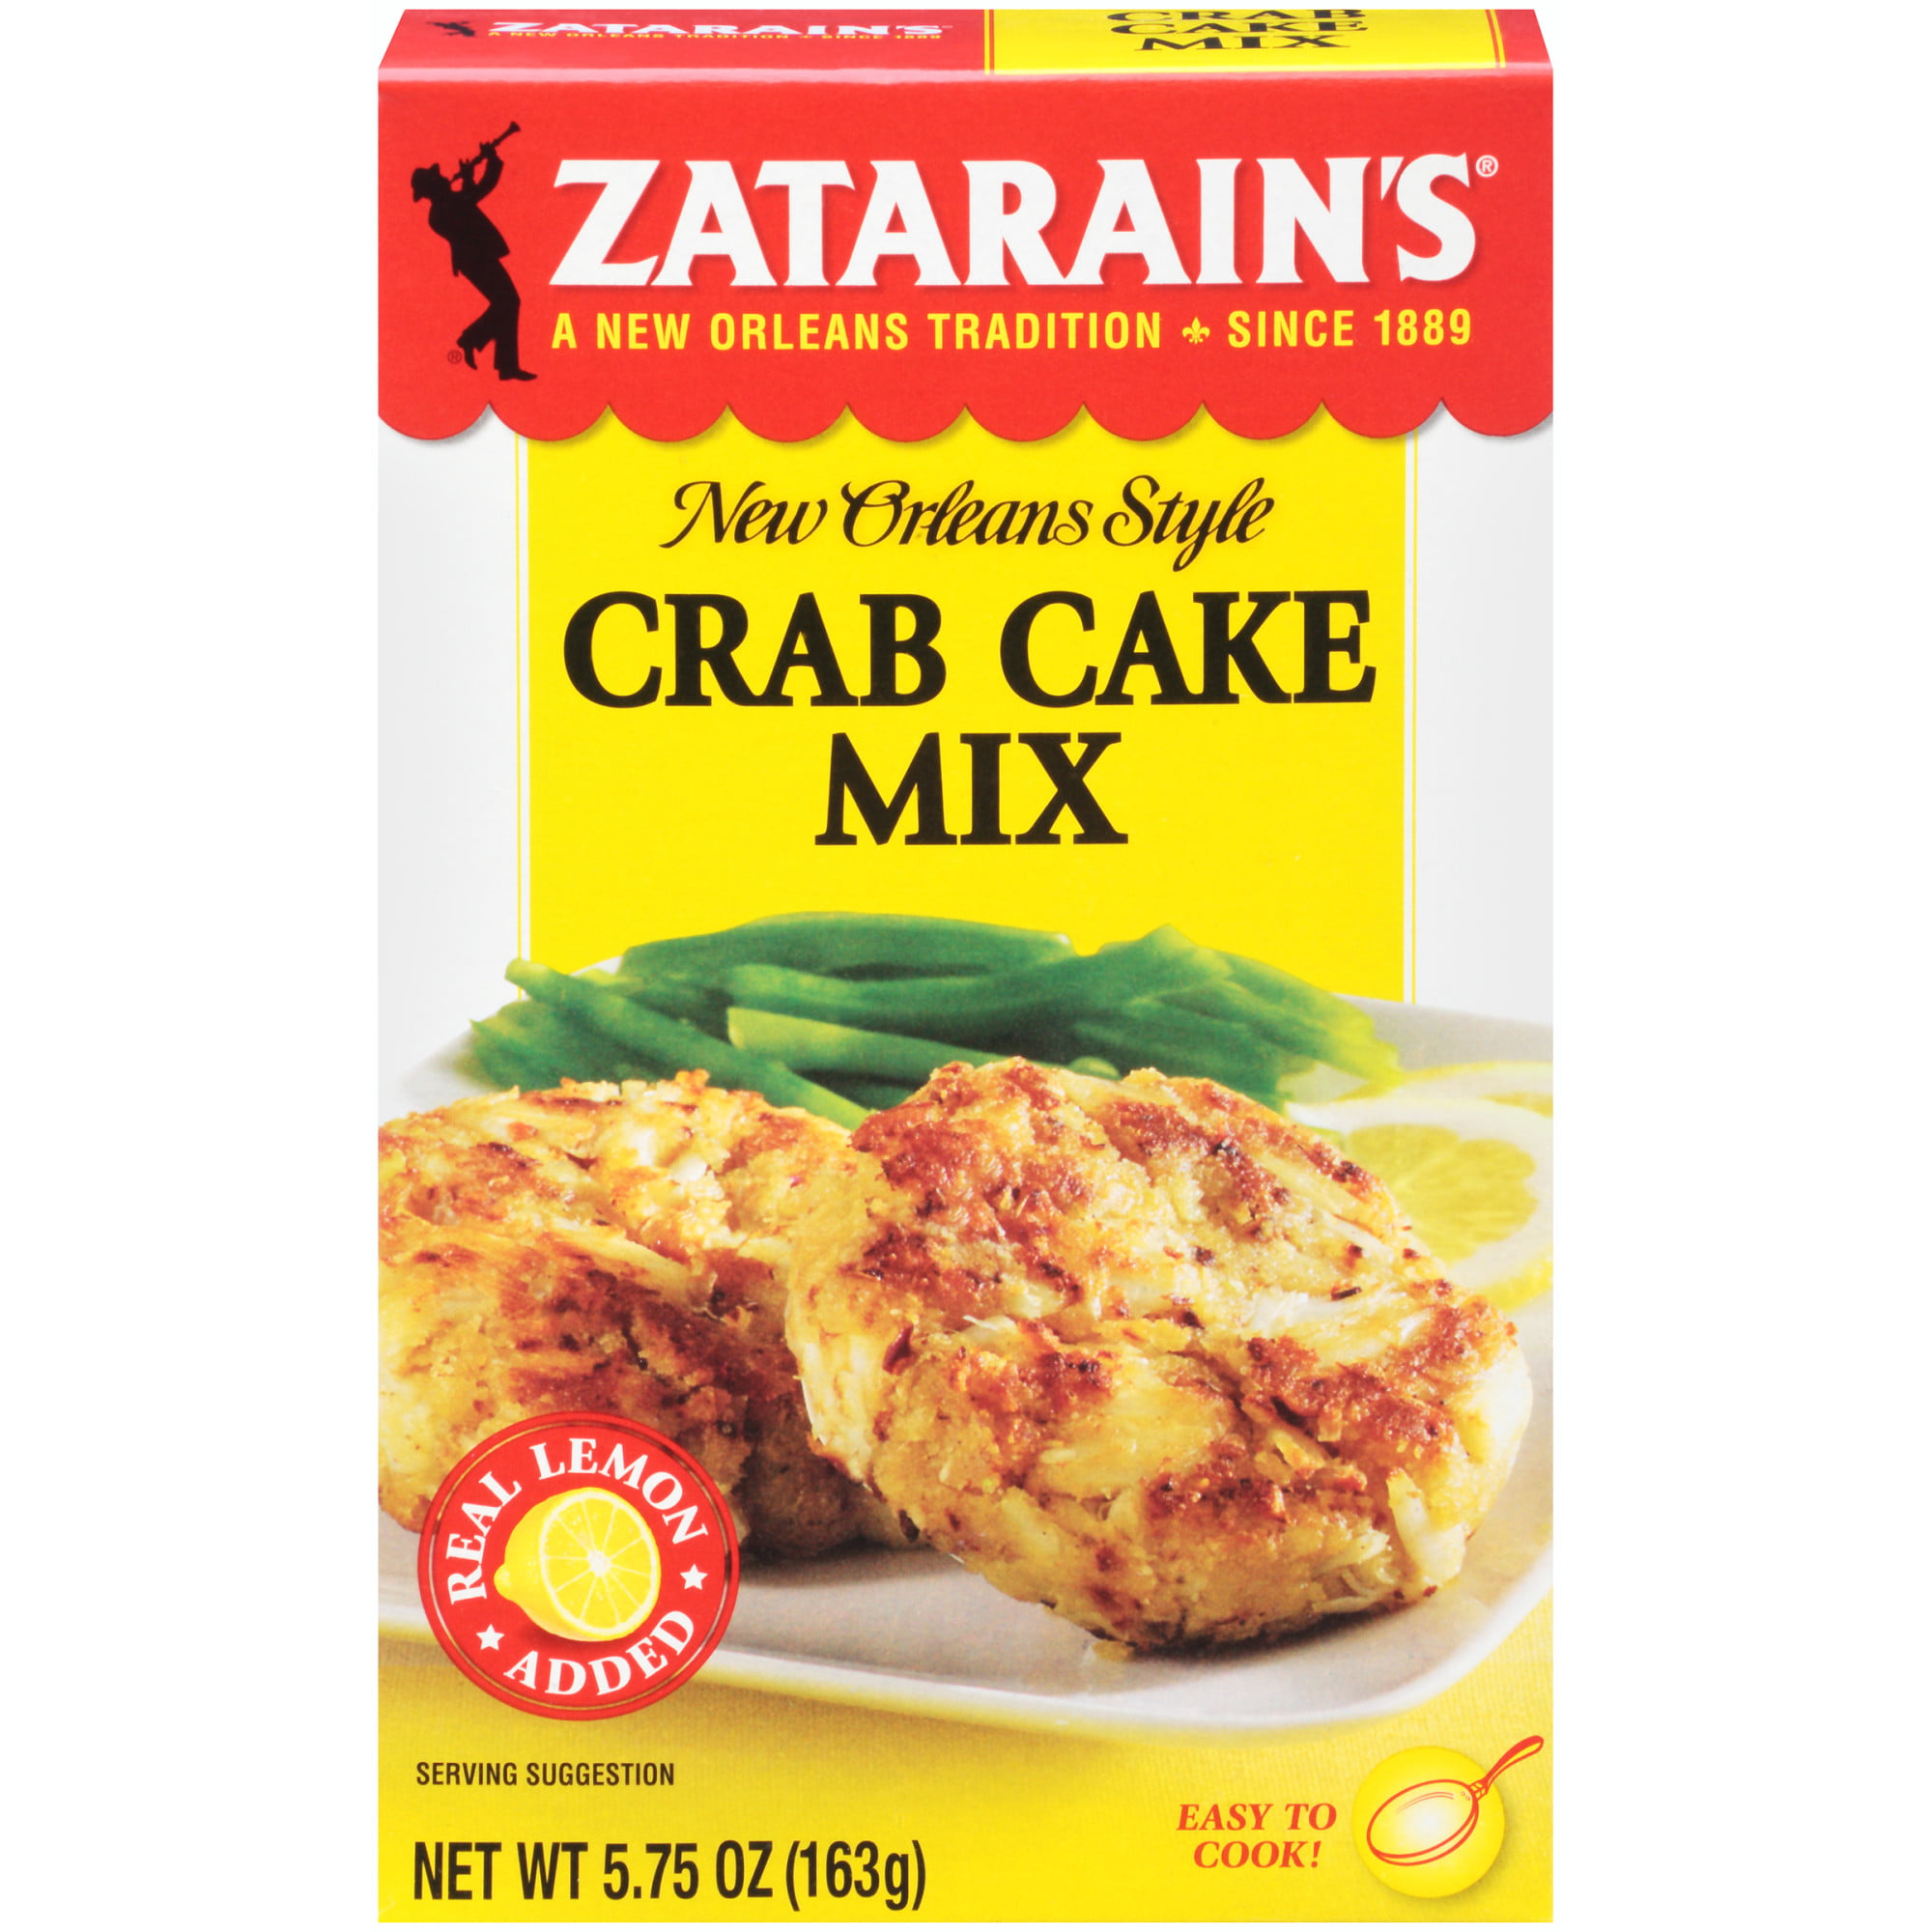 Crab Cake Mix Zatarain's